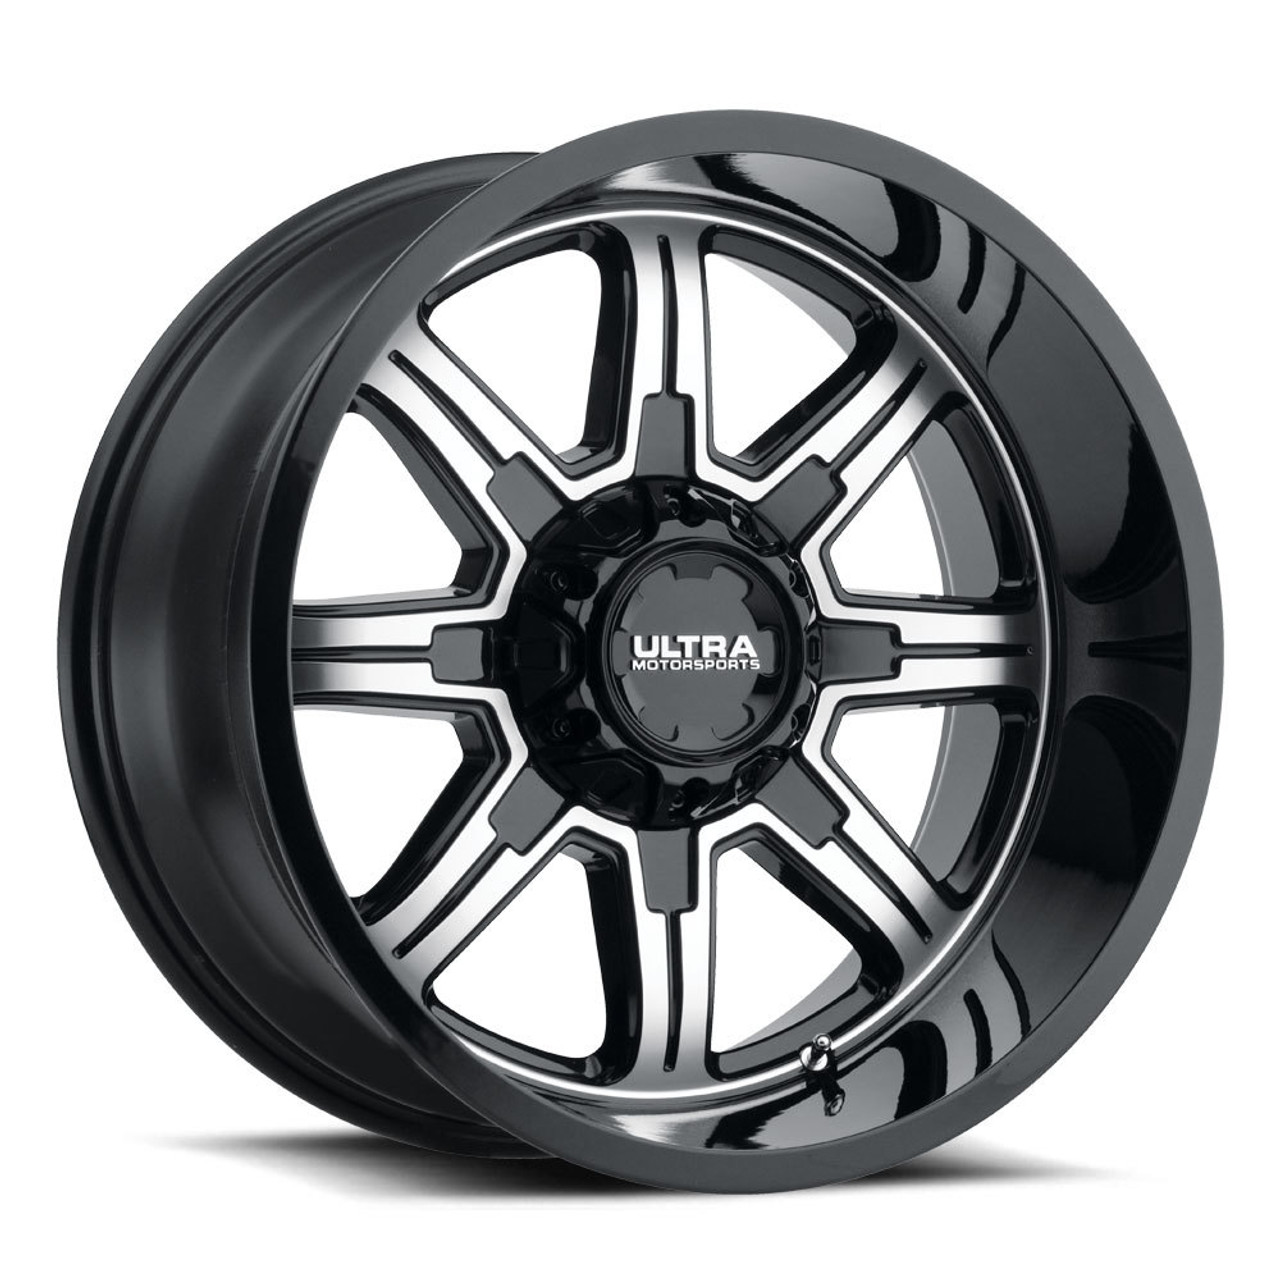 16" Ultra 229U Menace 16x8 6x5.5 Gloss Black Diamond Cut Clear-Coat Wheel 10mm